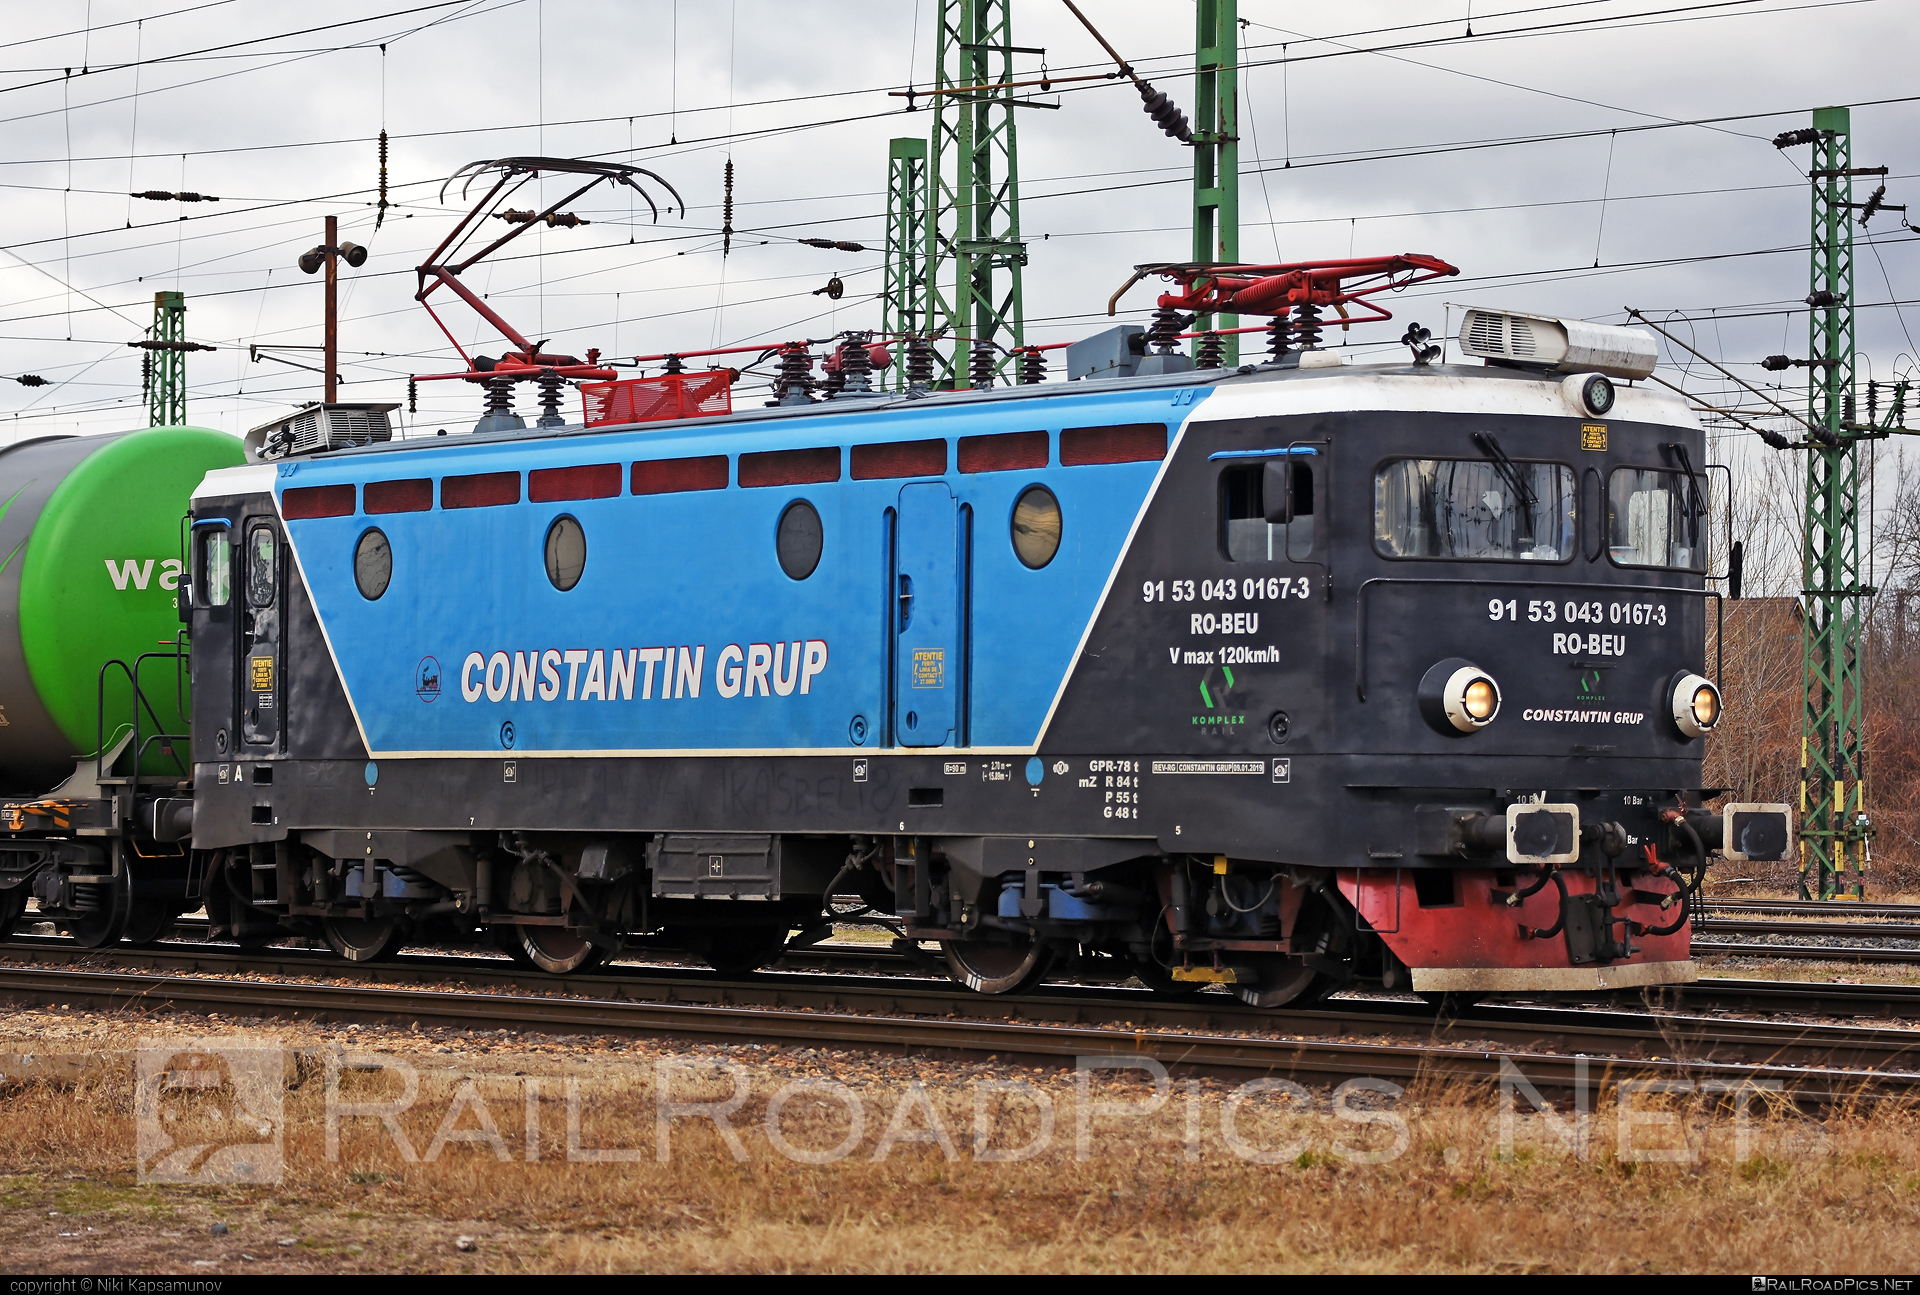 Končar JŽ class 441 - 430 167-3 operated by SC CONSTANTIN GRUP #constantingrup #jz441 #koncar #koncar441 #scConstantinGrup